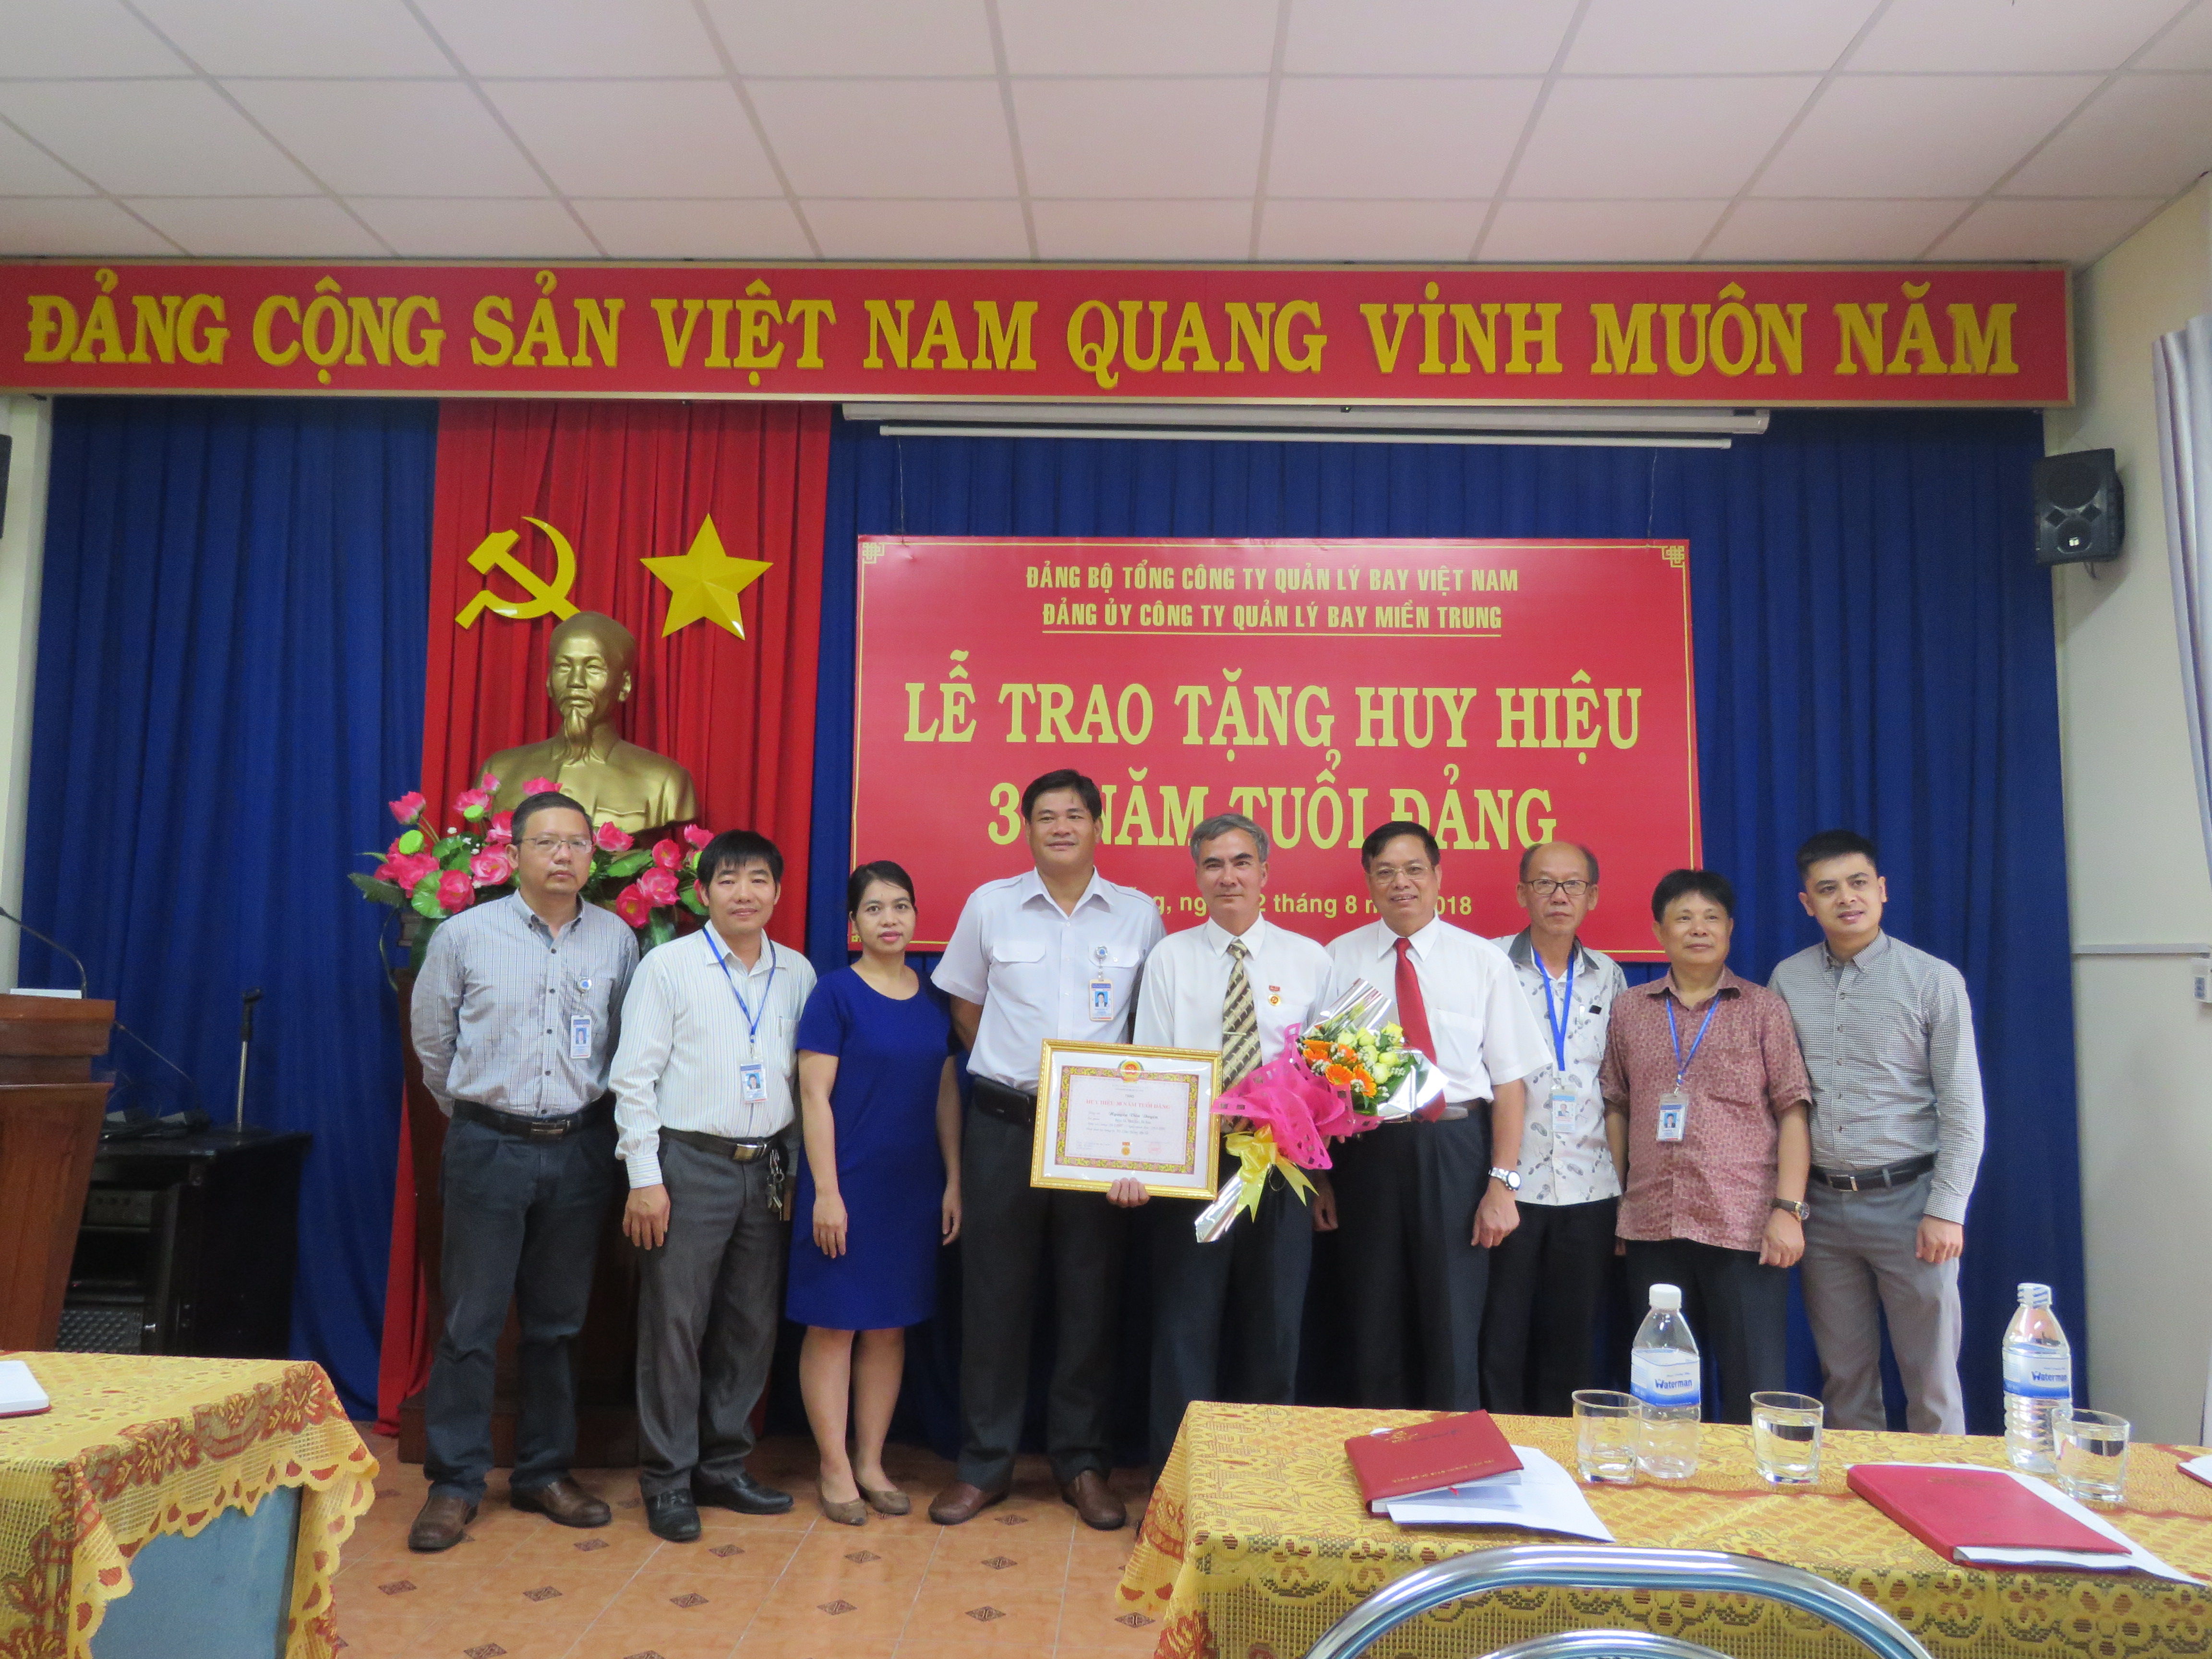 Đảng bộ Công ty Quản lý bay miền Trung tổ chức Lễ trao Huy hiệu 30 năm tuổi Đảng